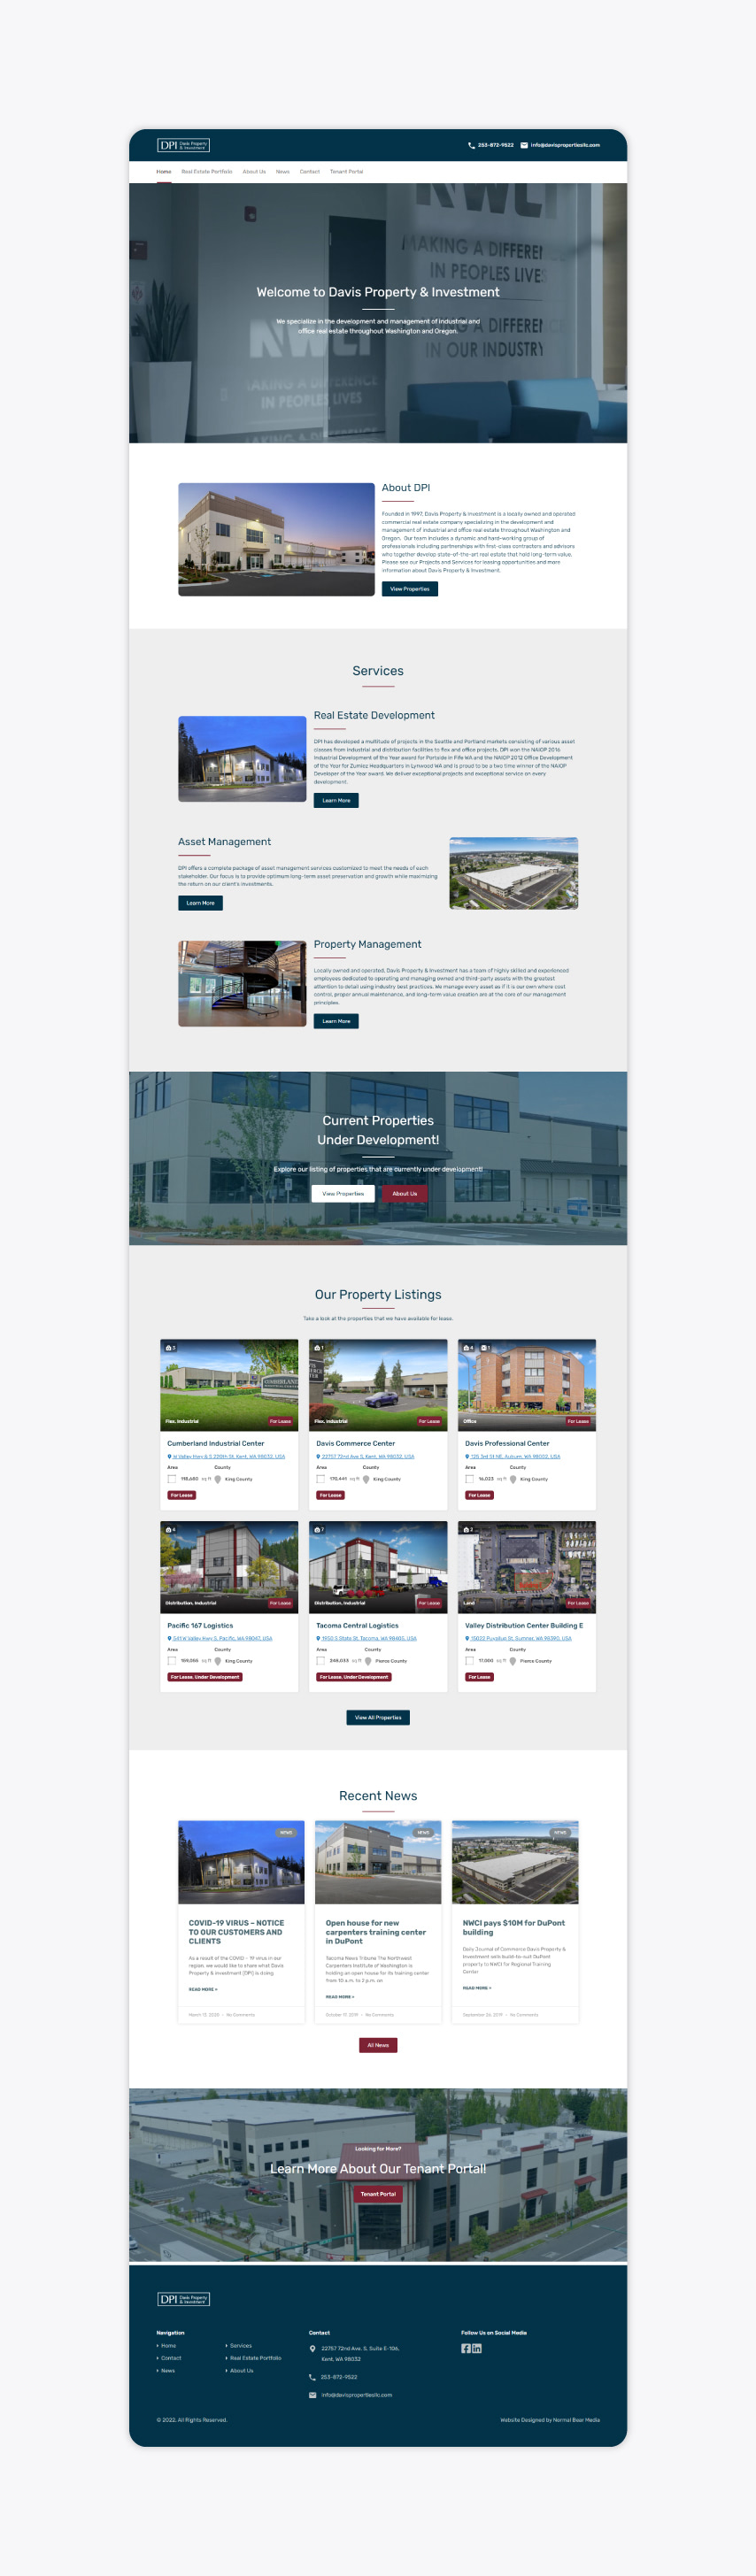 Davis Properties Website Preview